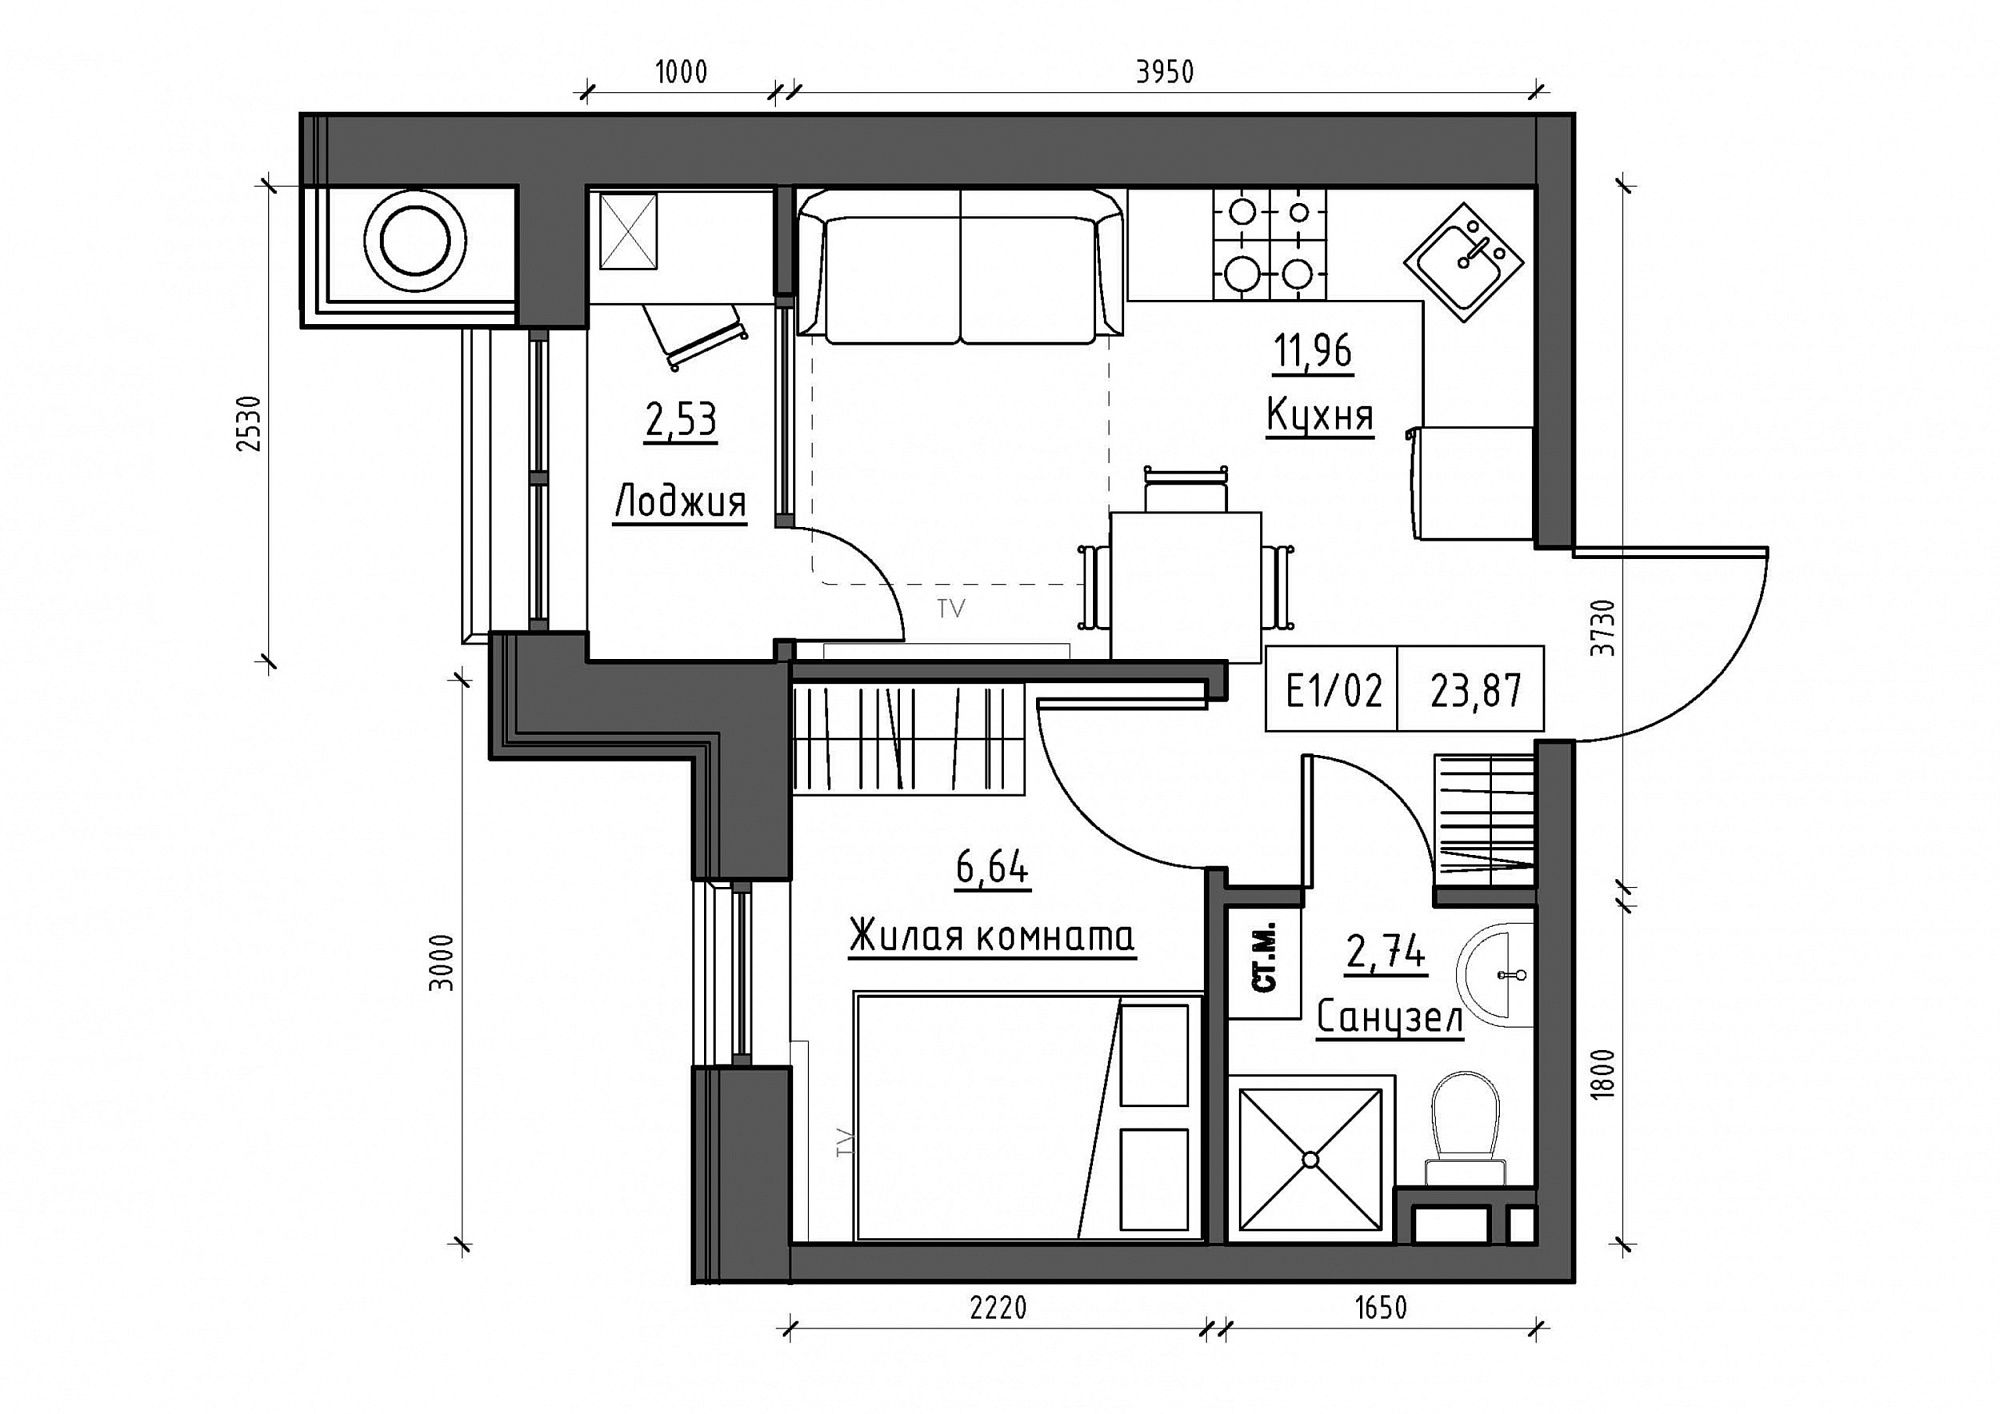 Планування 1-к квартира площею 23.87м2, KS-011-02/0001.